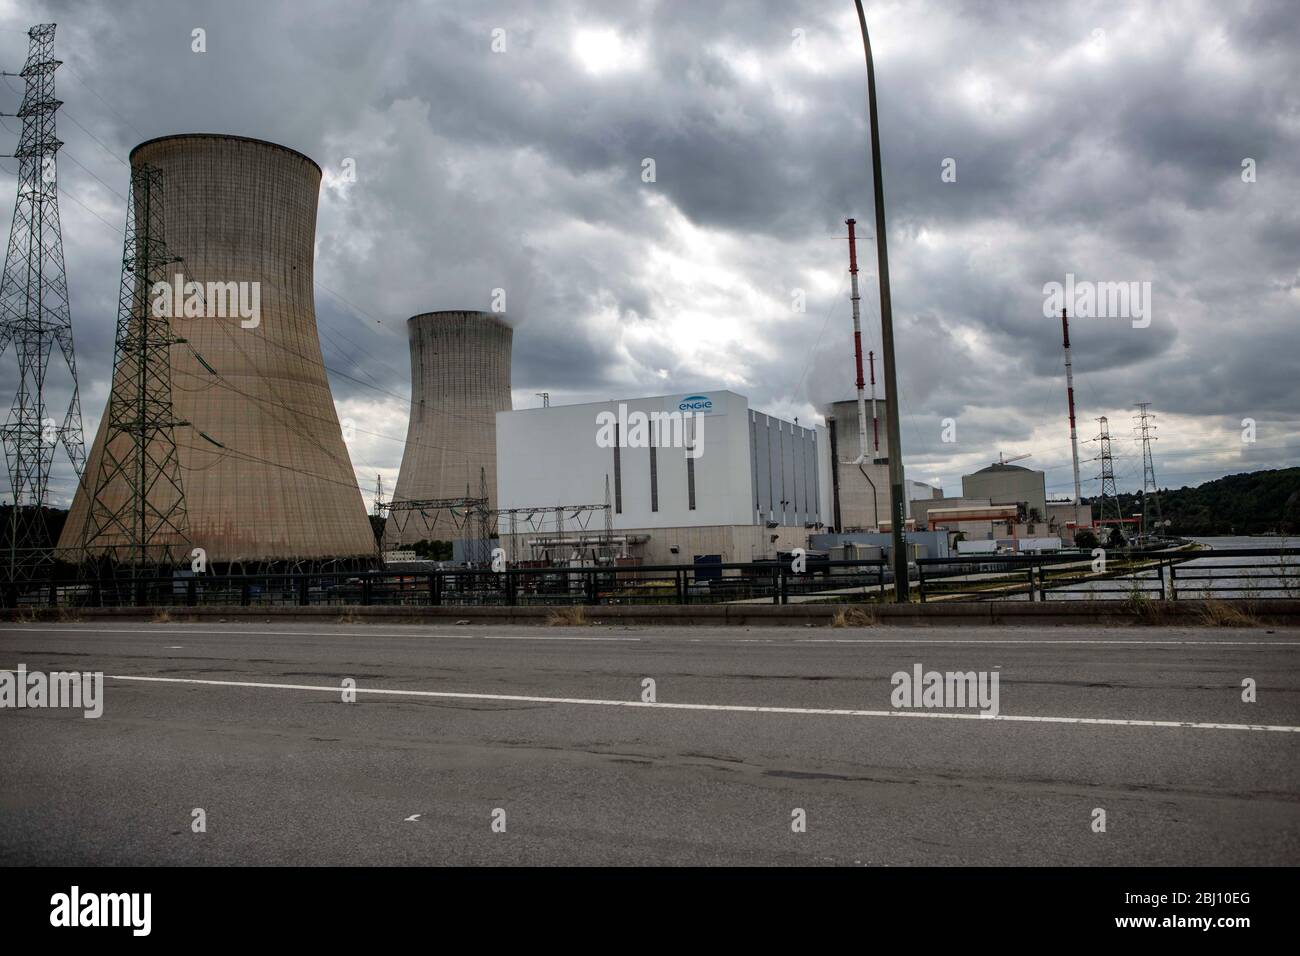 Das umstrittene Kernkraftwerk Tihange des Betreibers Electrabel M. V. nucleaire Produktie weist mehrere tausend Risse in der Außenhülle auf, die aber Foto Stock